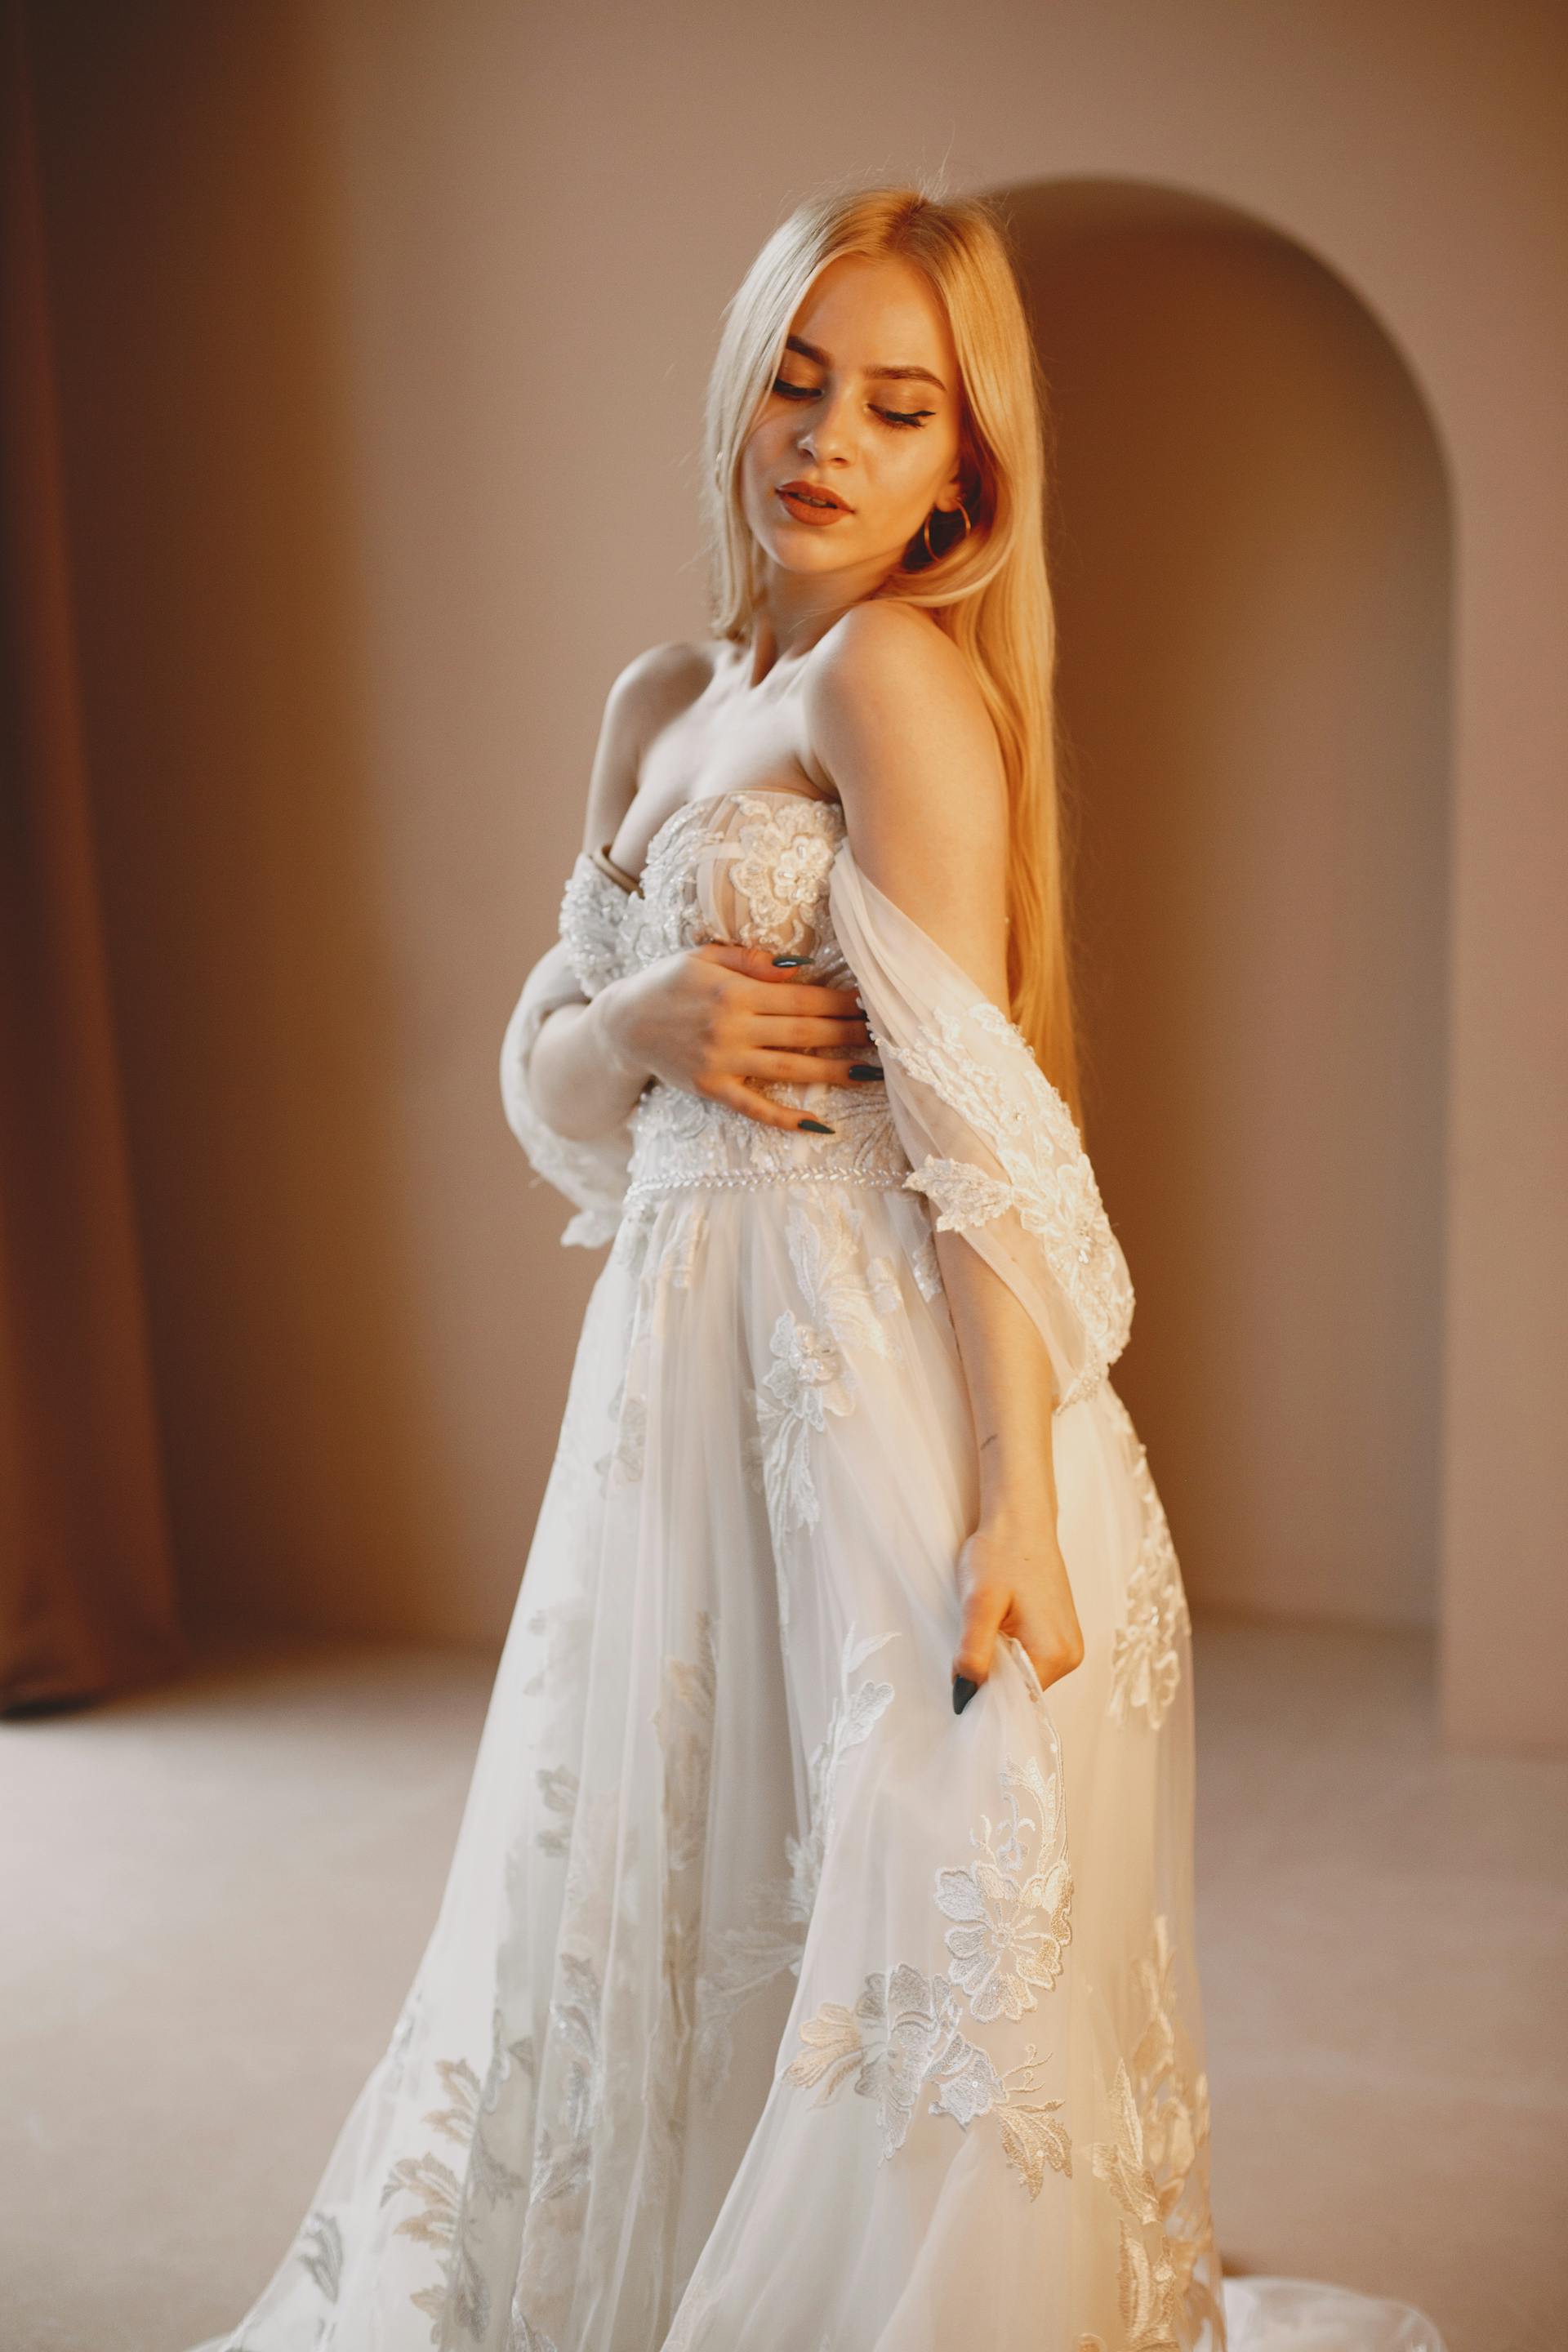 Mujer con un vestido largo de encaje blanco | Fuente: Pexels